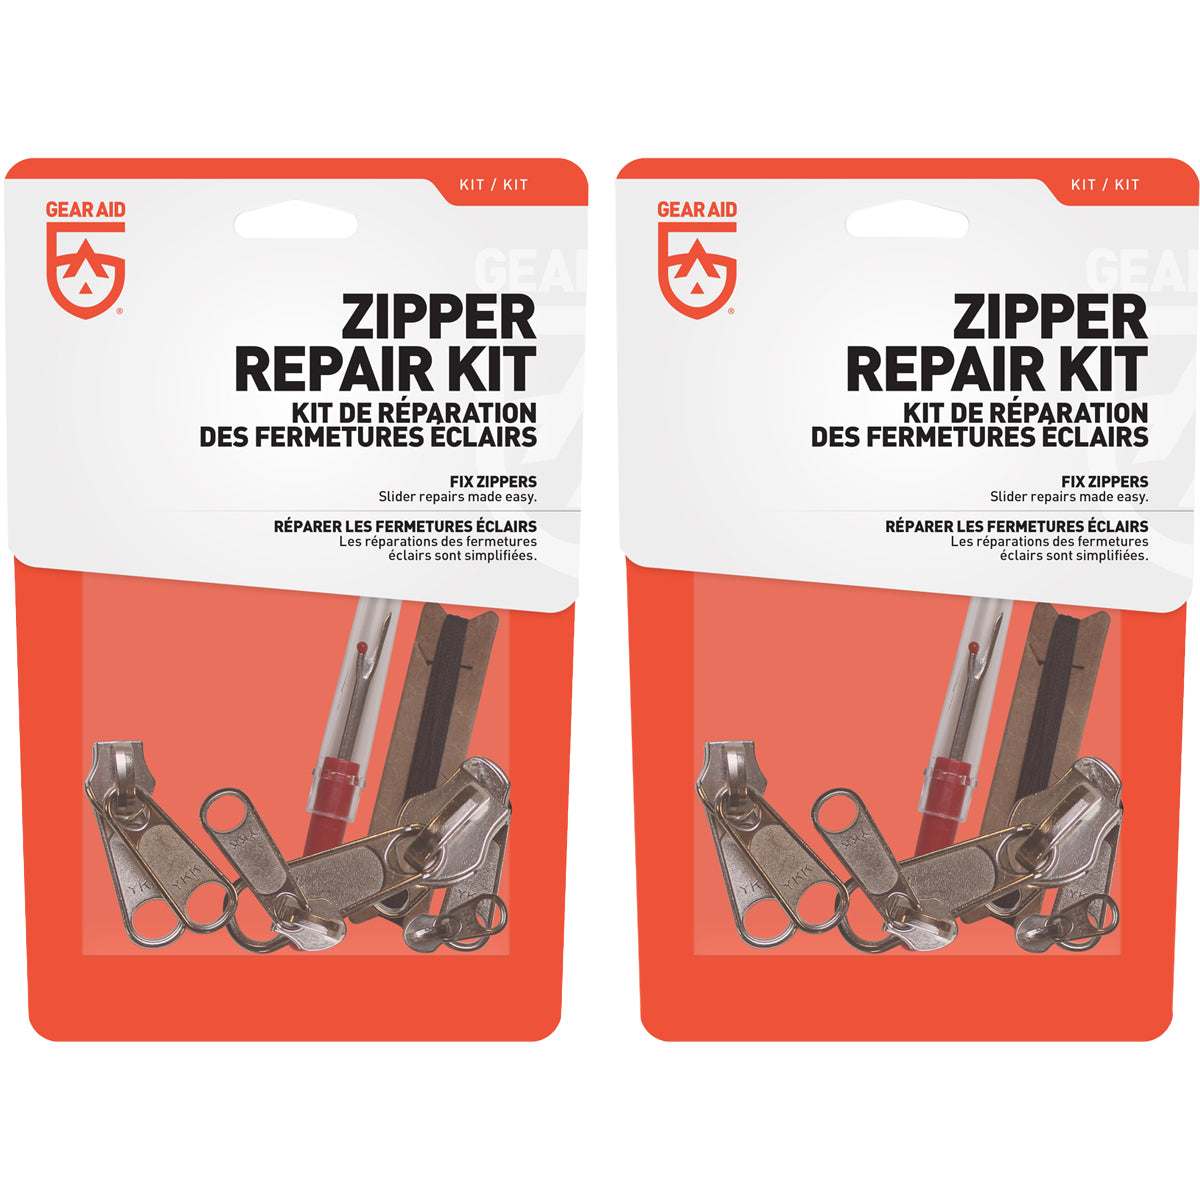 Gear Aid Zipper Repair Kit - 2-Pack Gear Aid